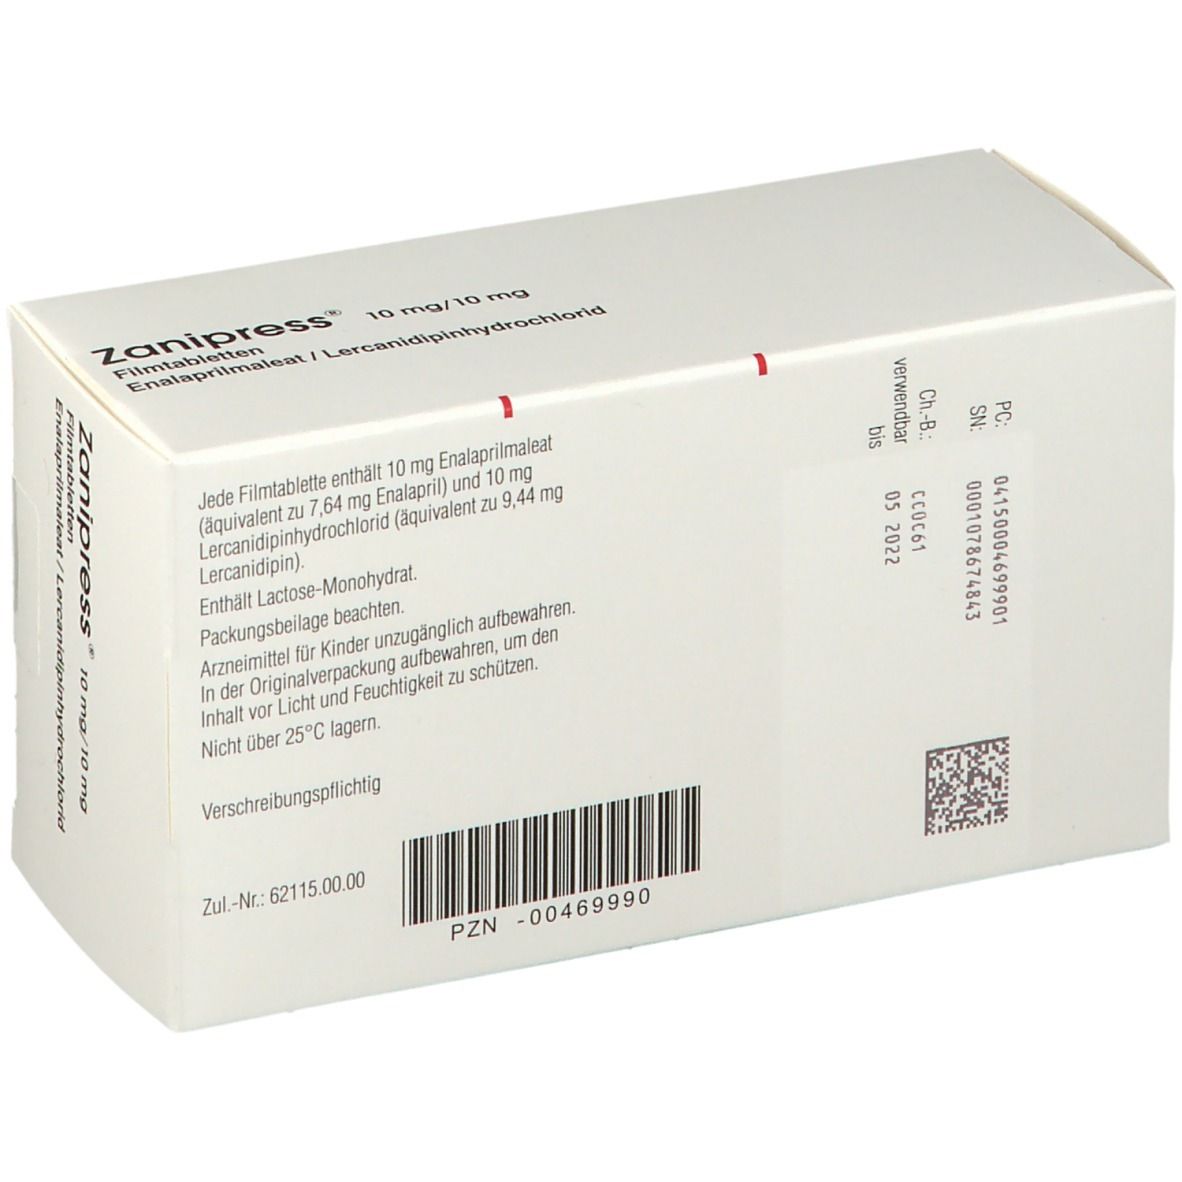 Zanipress® 10 mg/10 mg